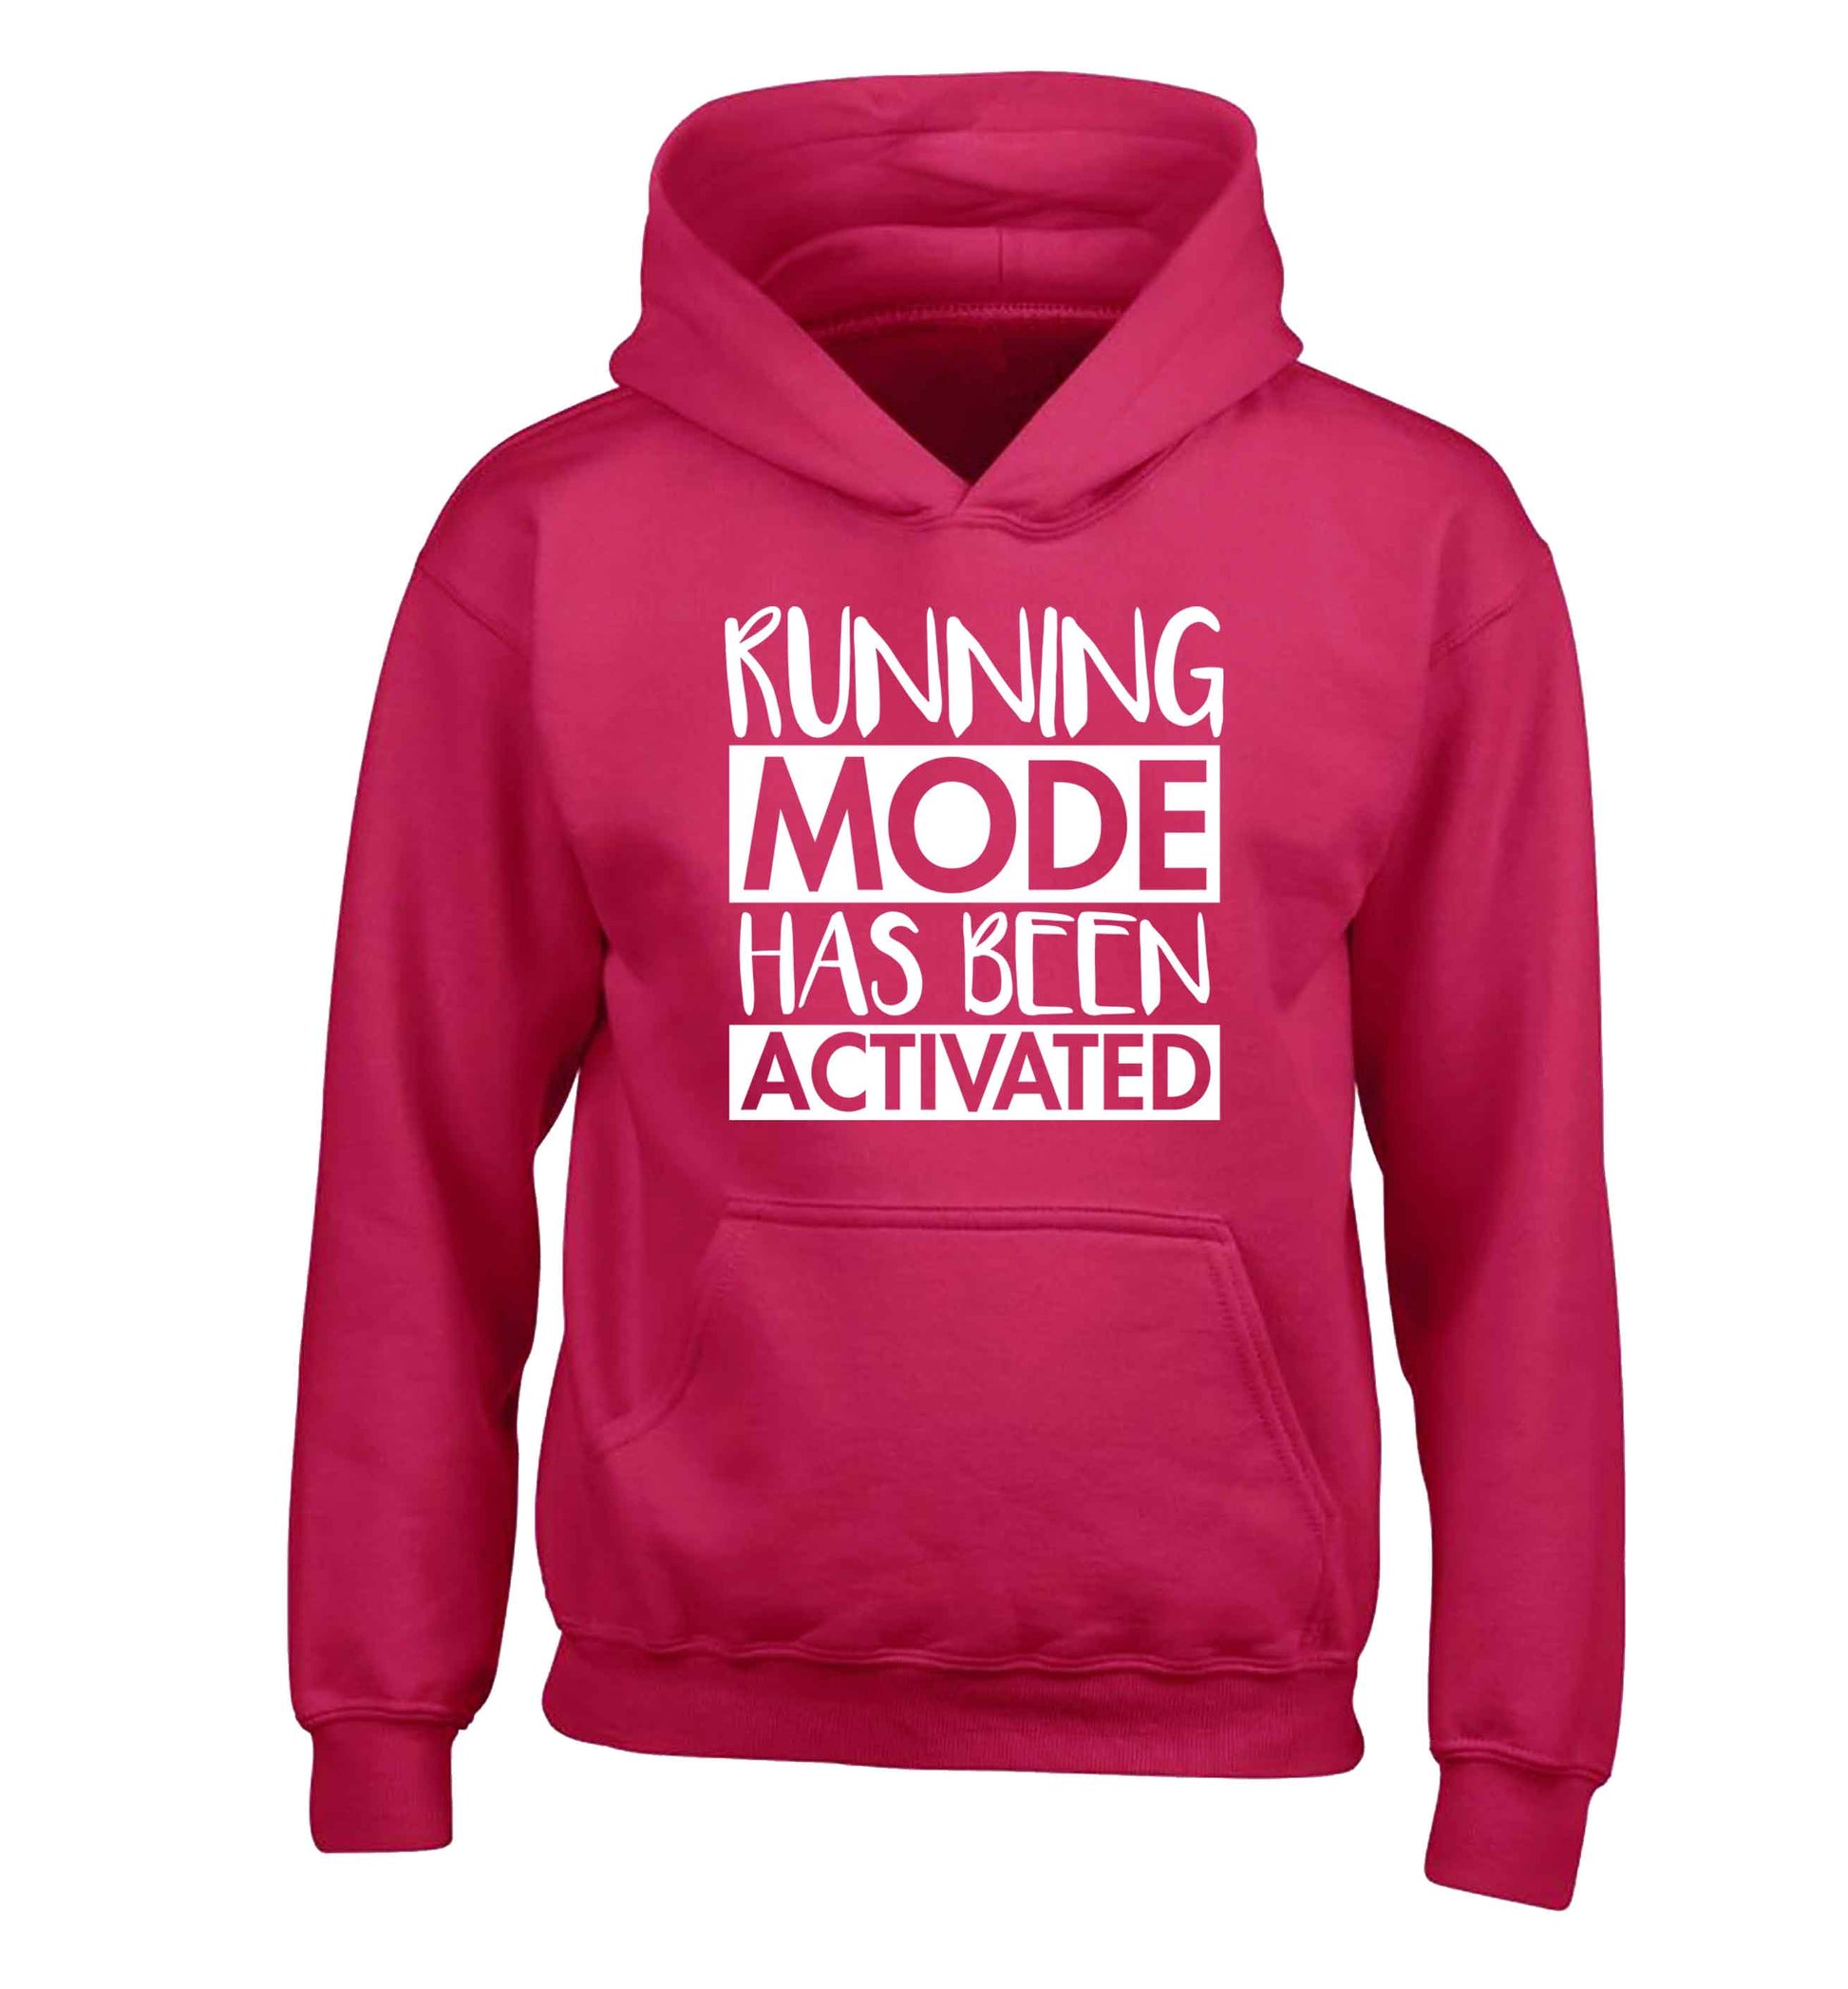 Running mode has been activated children's pink hoodie 12-13 Years